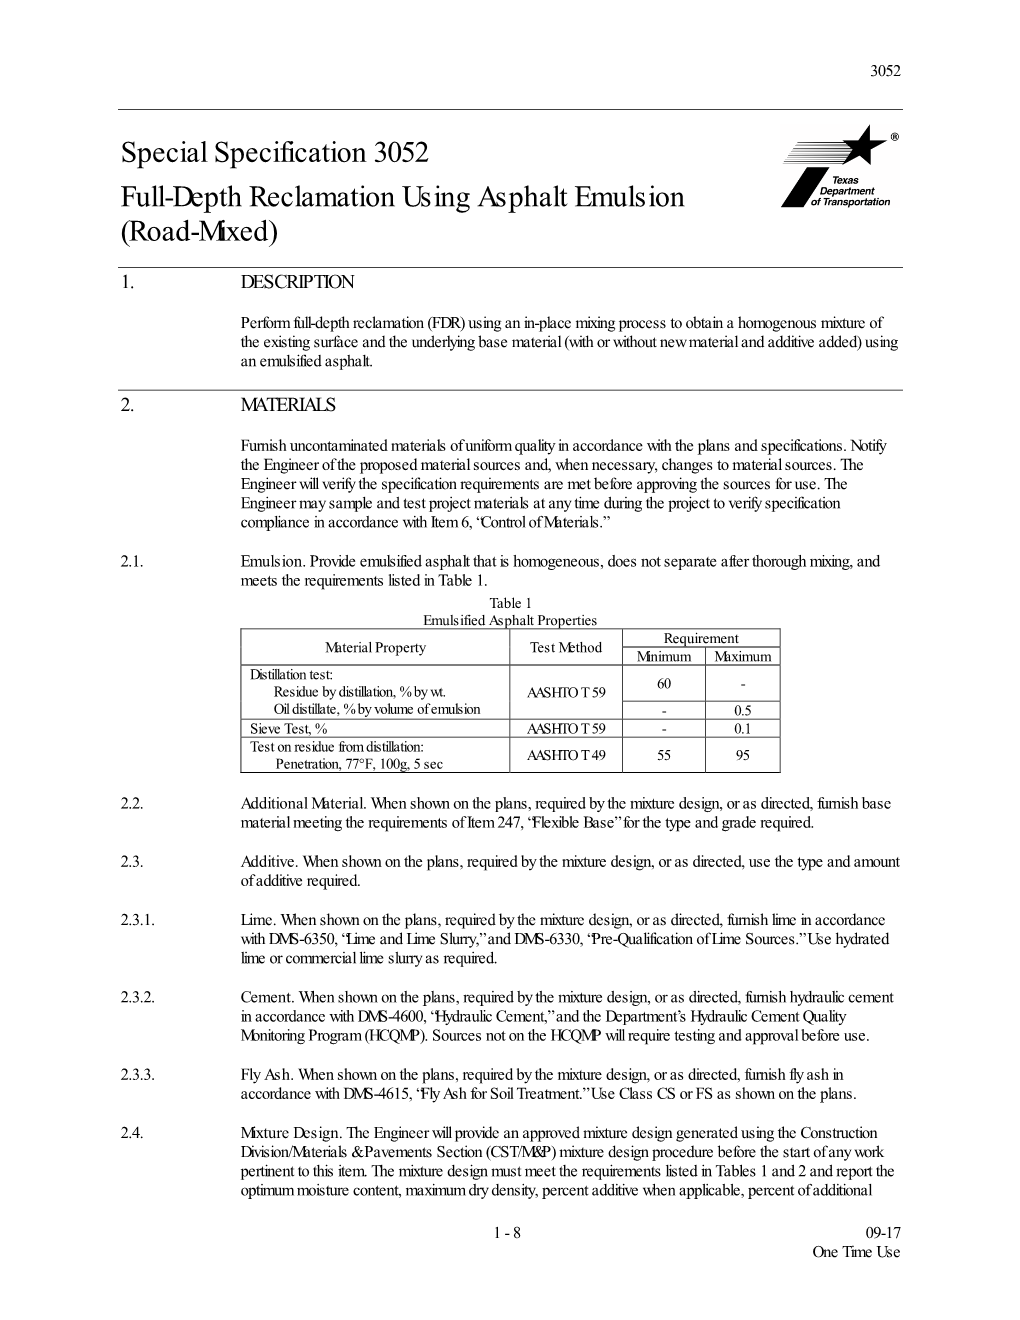 Special Specification 3052 Full-Depth Reclamation Using Asphalt Emulsion (Road-Mixed)